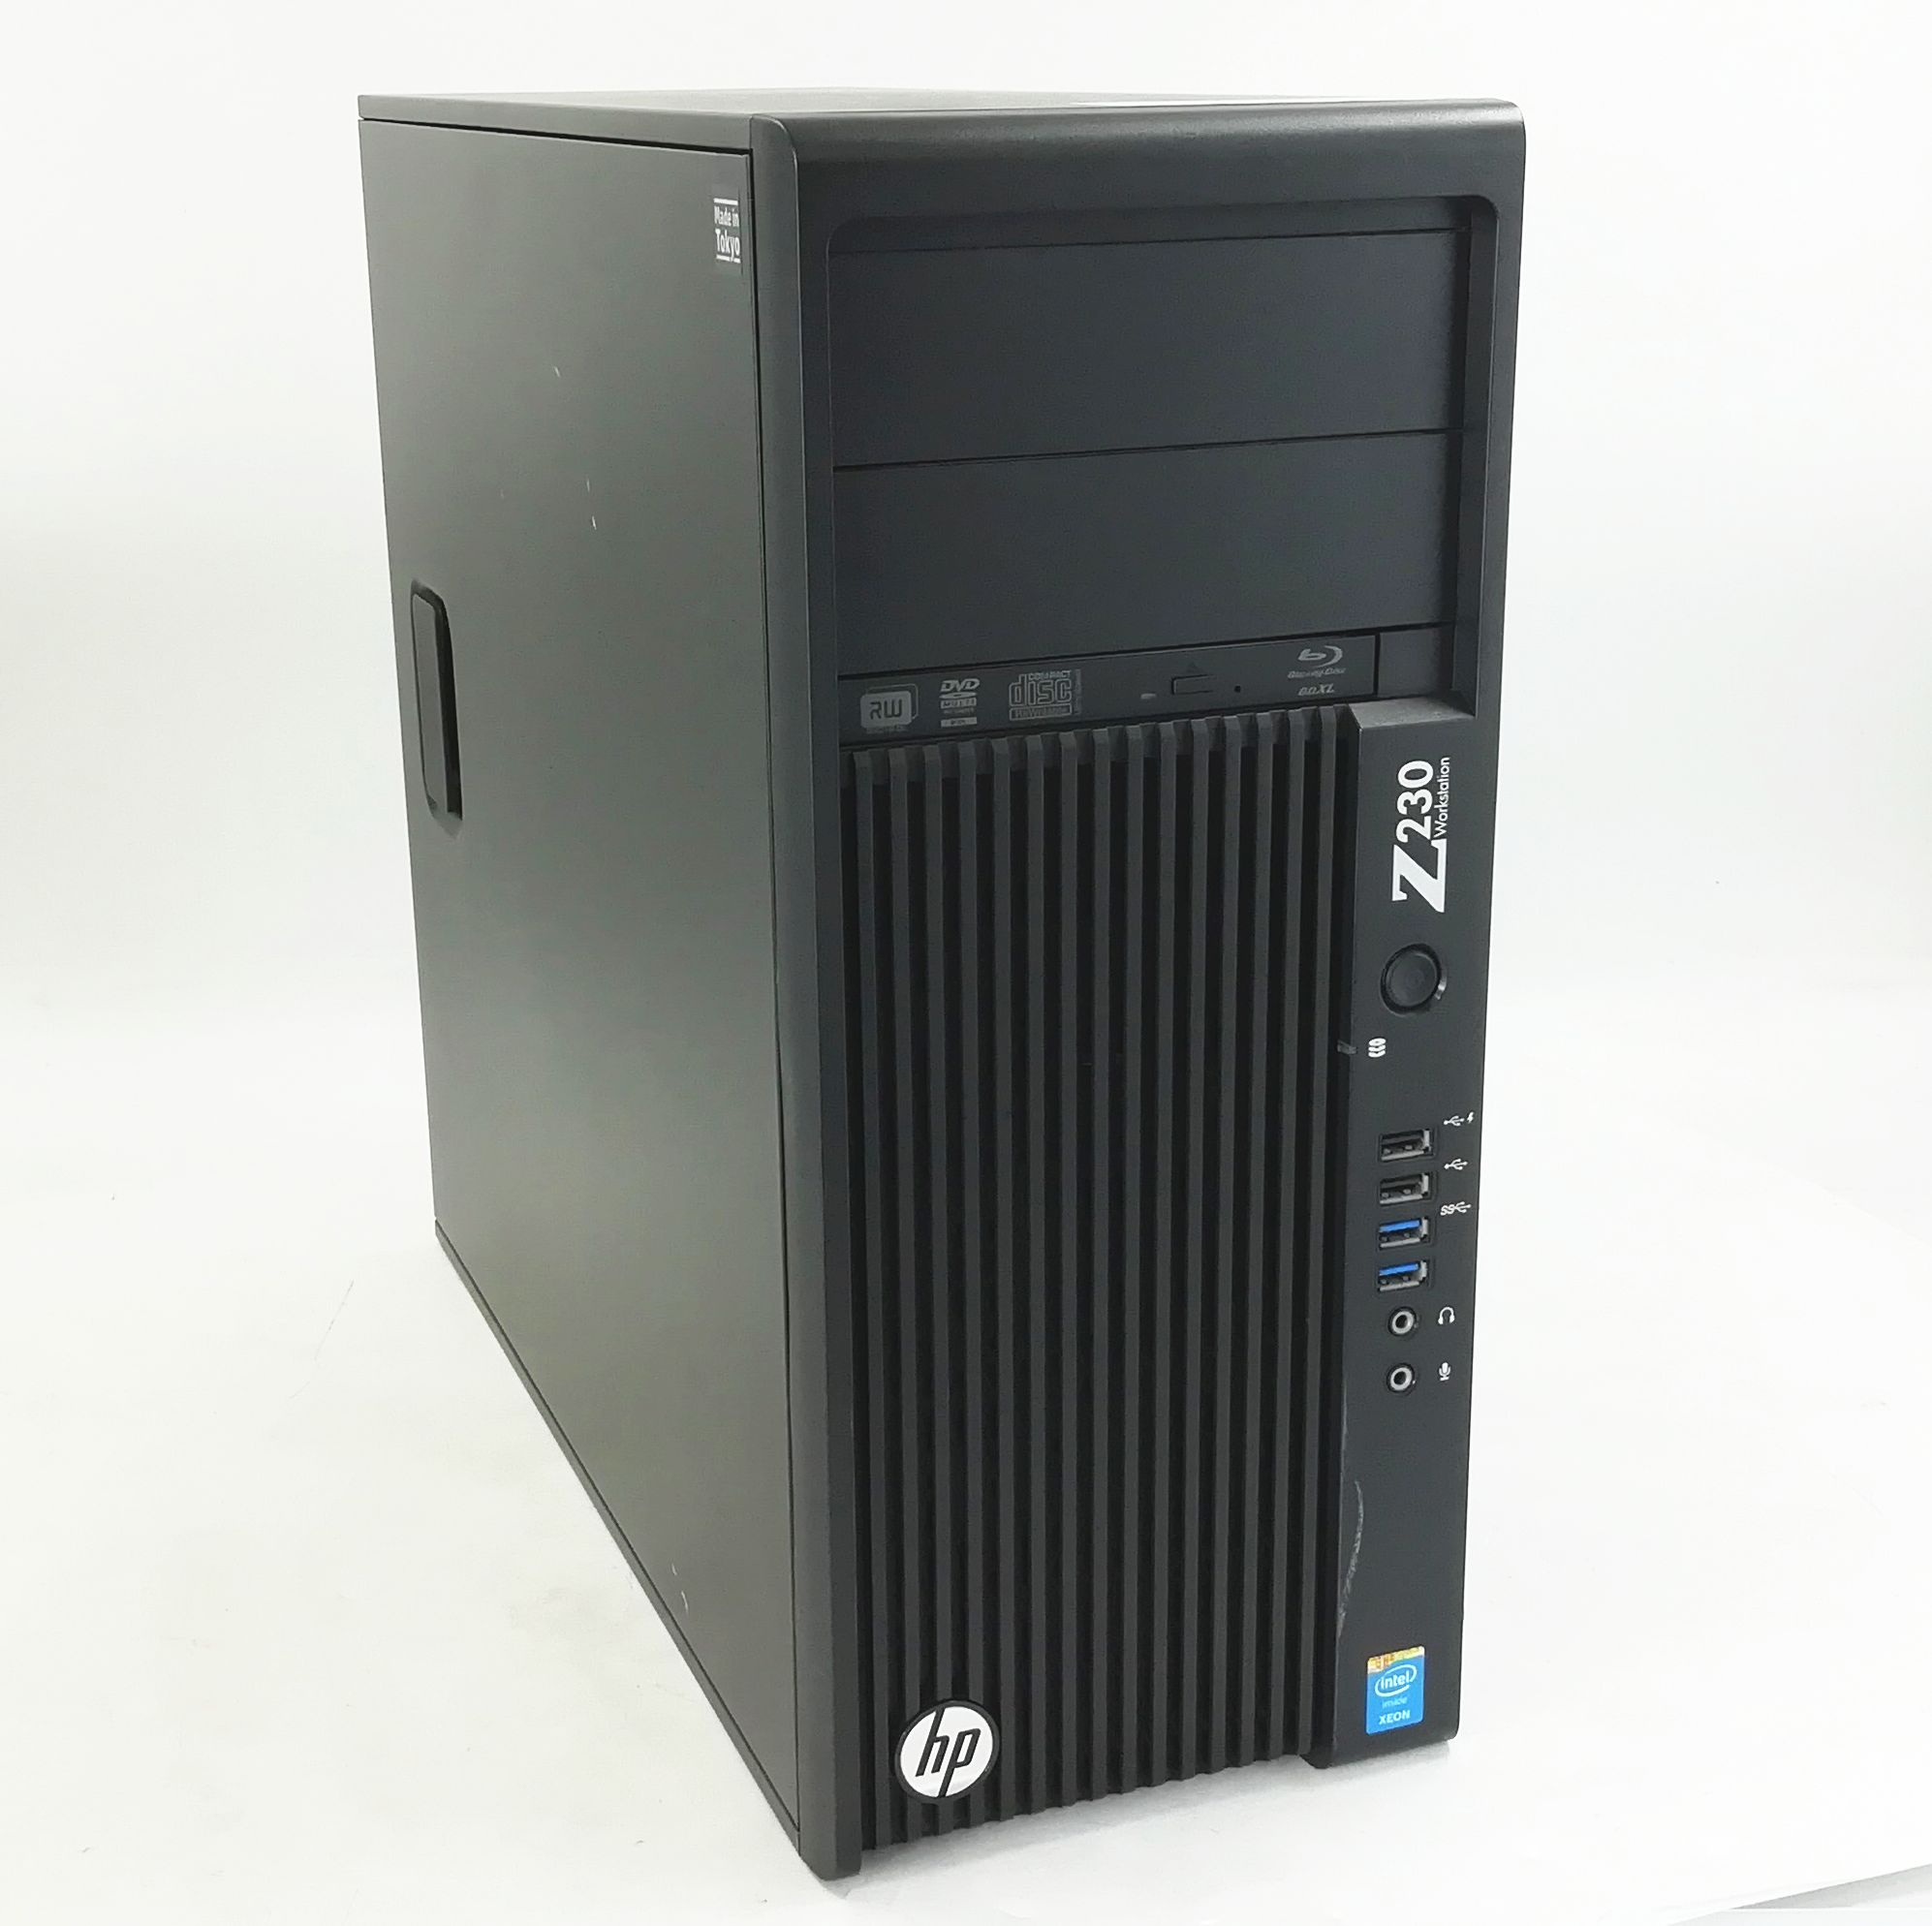 中古PC hp Z230 Tower Workstation Xeon E3 1231 v3 メモリ16GB 新品SSD 2.5インチ256GB 中古HDD 3.5インチ500GBx2 Raid1 Windows 10 Pro 64bit AMD FirePro W2100 中古パソコン Blu-ray＋DVD…